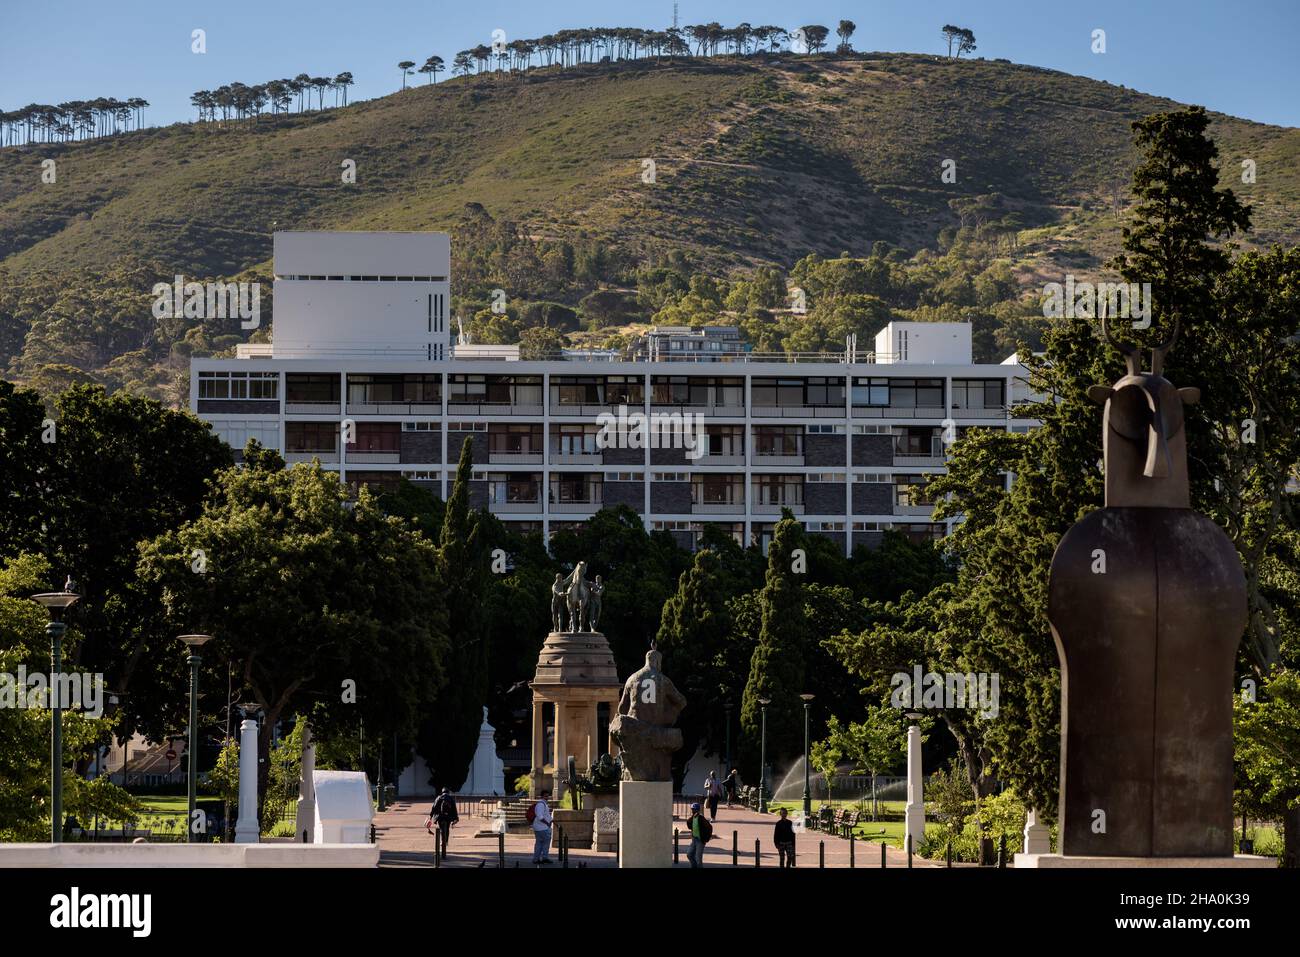 Cape Town's Company Garden con lo sfondo di Signal Hill, parte della topografia della città che la rende distintiva e riconoscibile a livello globale Foto Stock